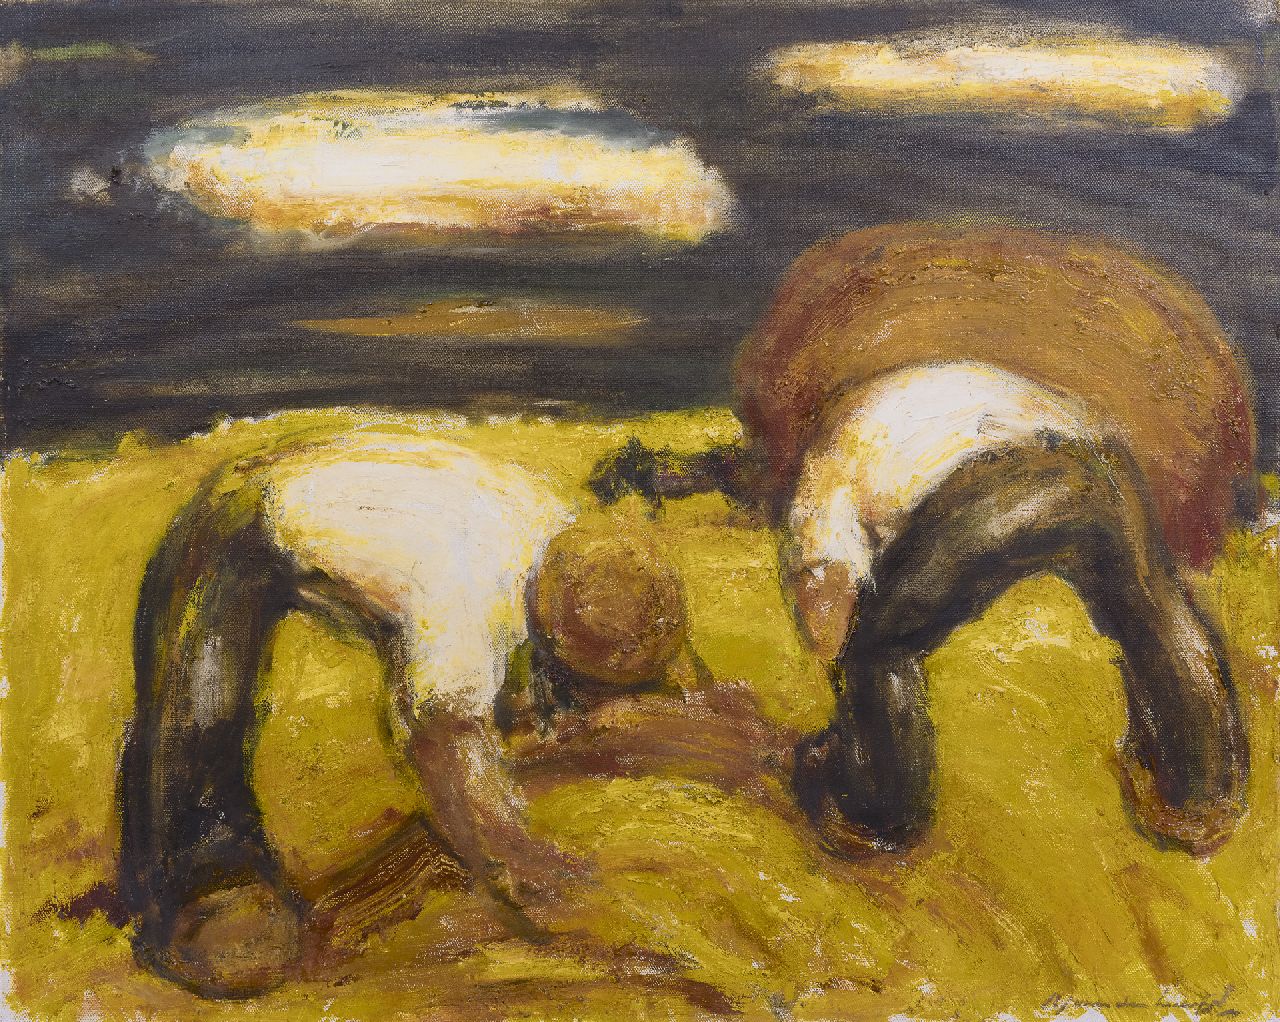 Heuvel K.J. van den | Karel Jan van den Heuvel, Hooioogst, olieverf op doek 79,9 x 100,7 cm, gesigneerd rechtsonder